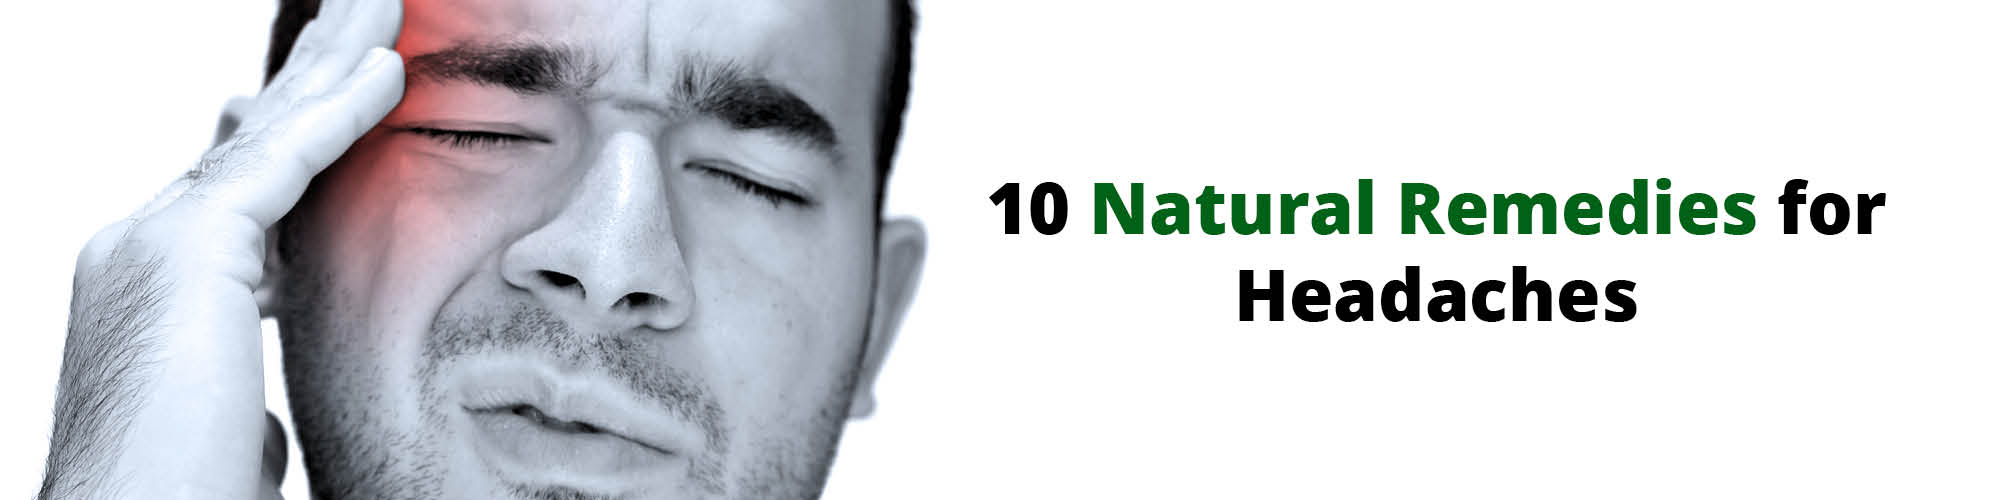 10 Natural Remedies for Headaches